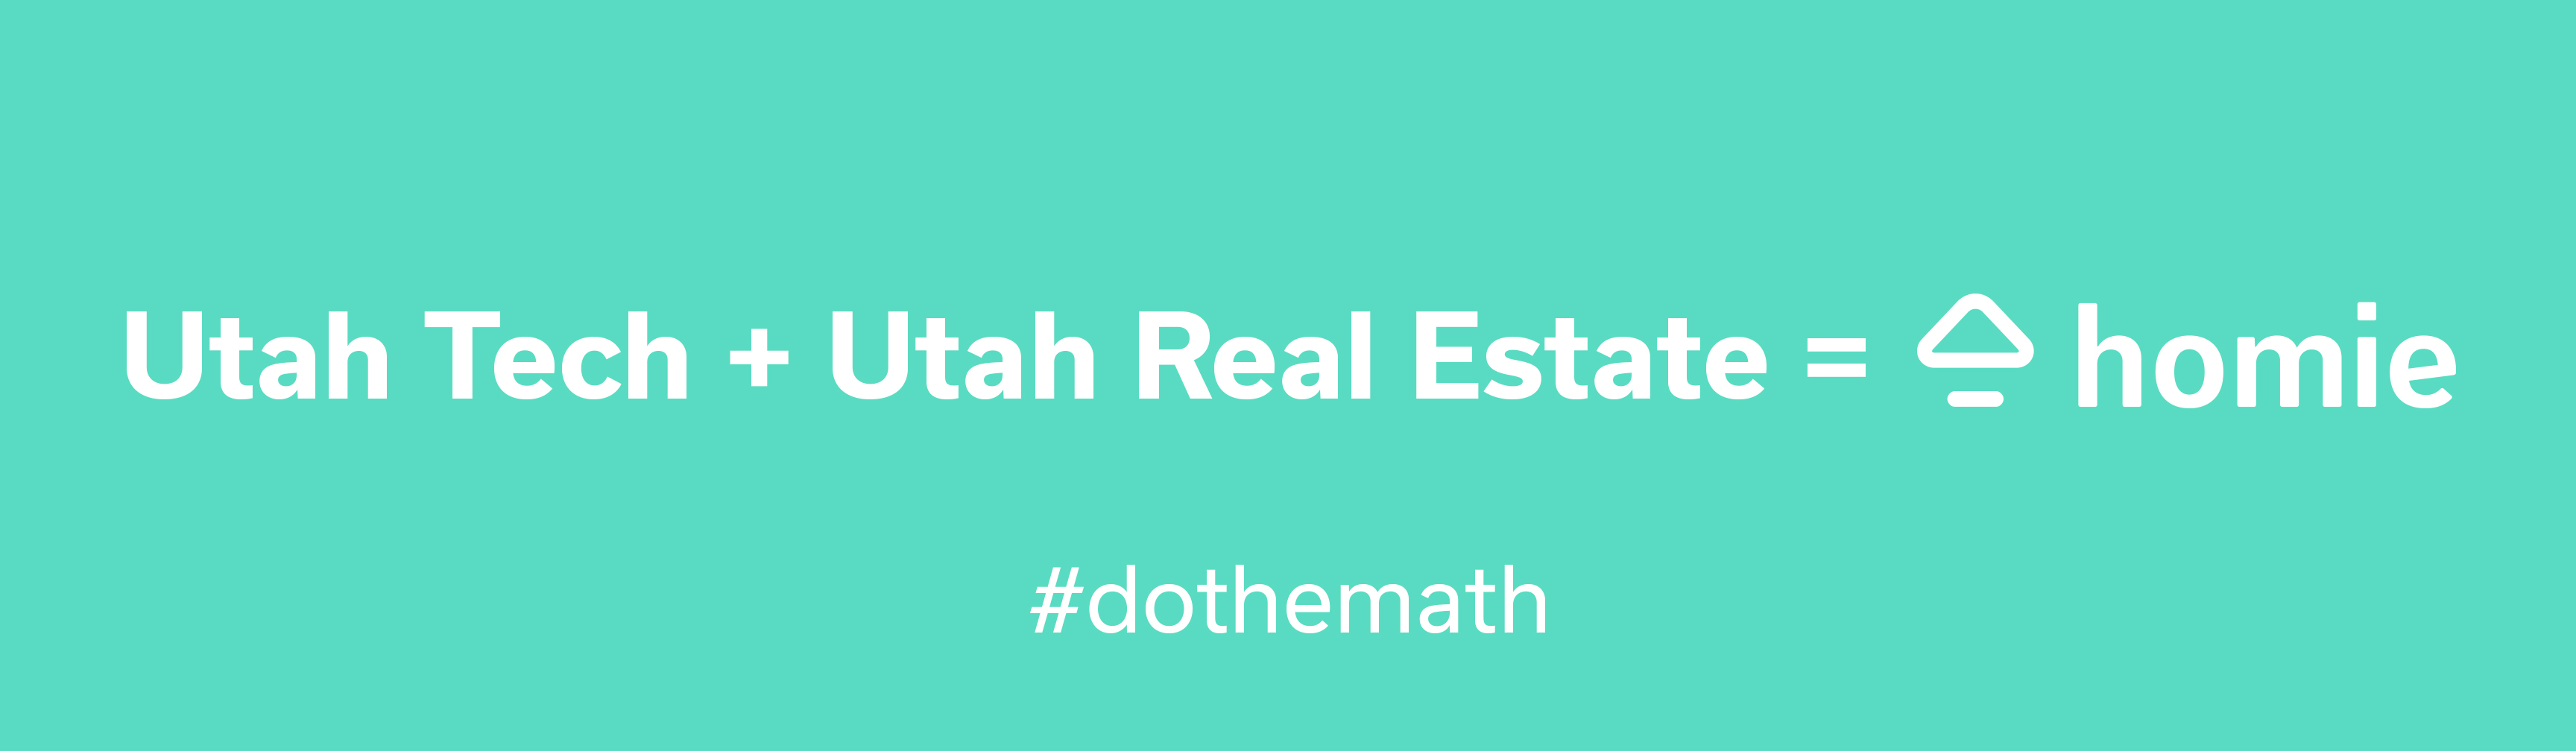 Utah Tech + Real Estate